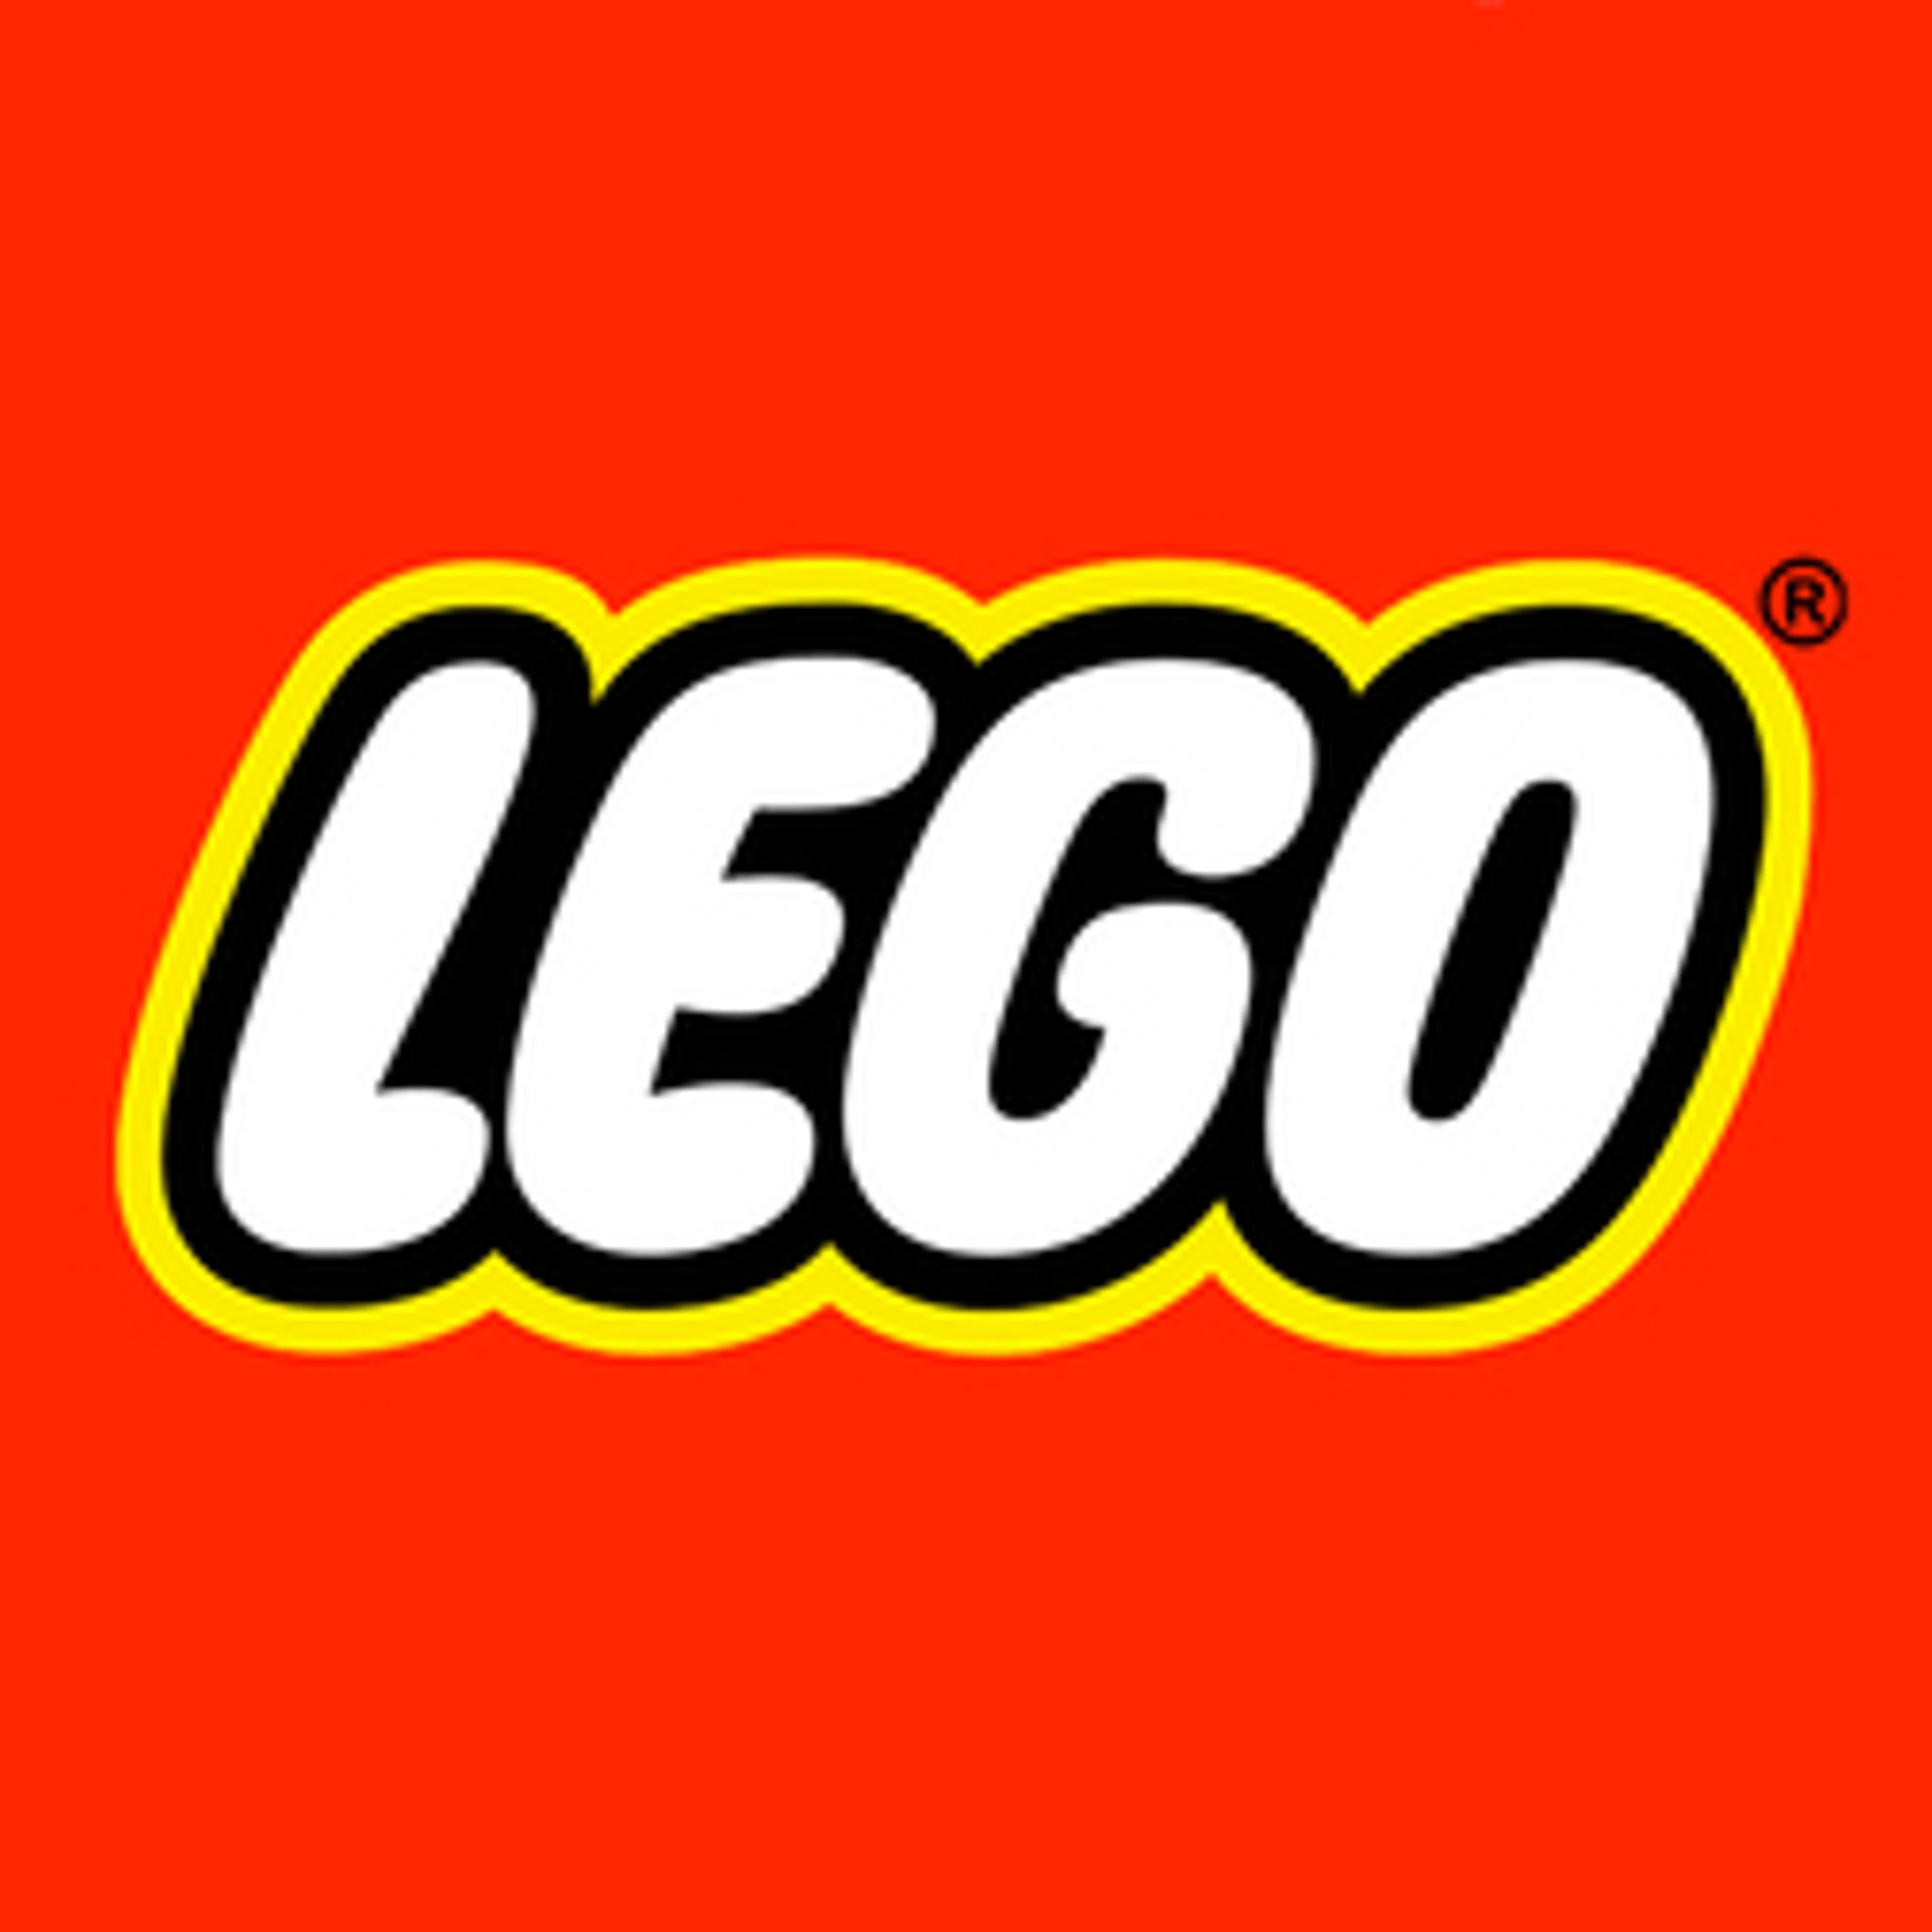  Lego Shop 